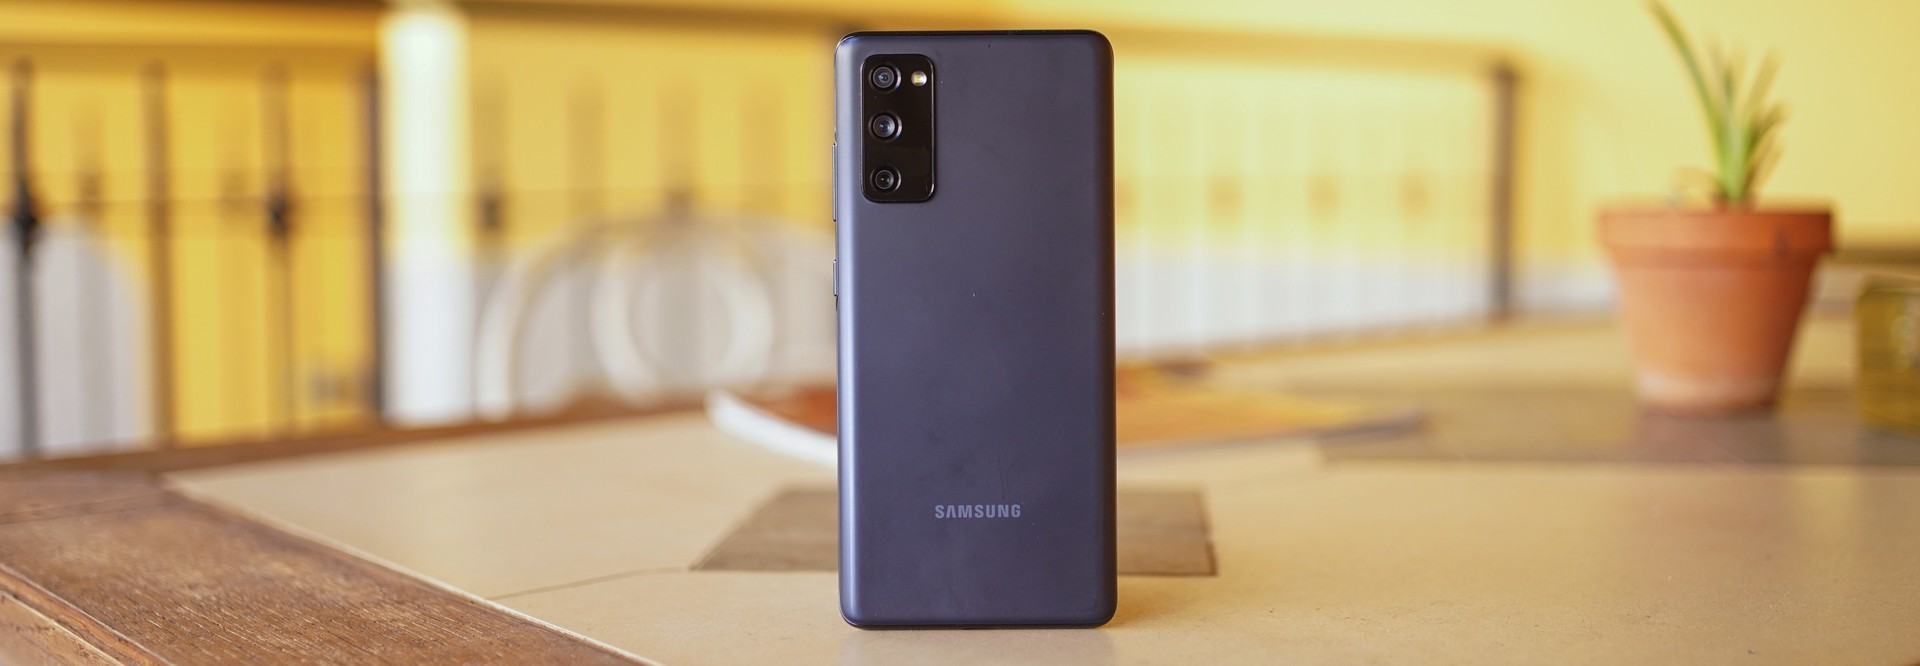 Recensione Galaxy S20 FE: è lui il Samsung che vorrei - HDblog.it